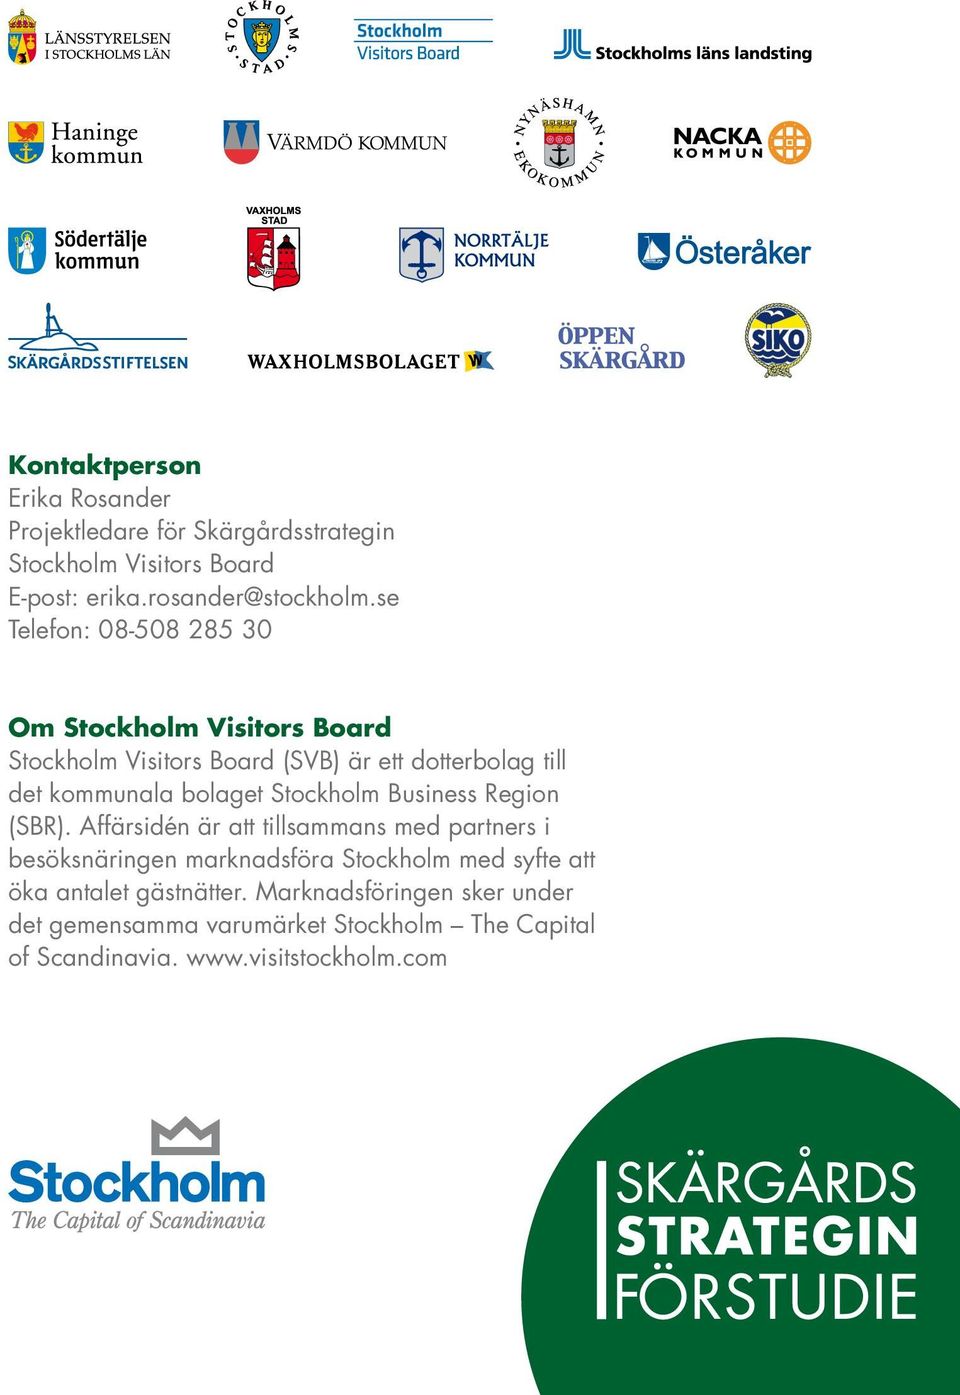 Stockholm Business Region (SBR).